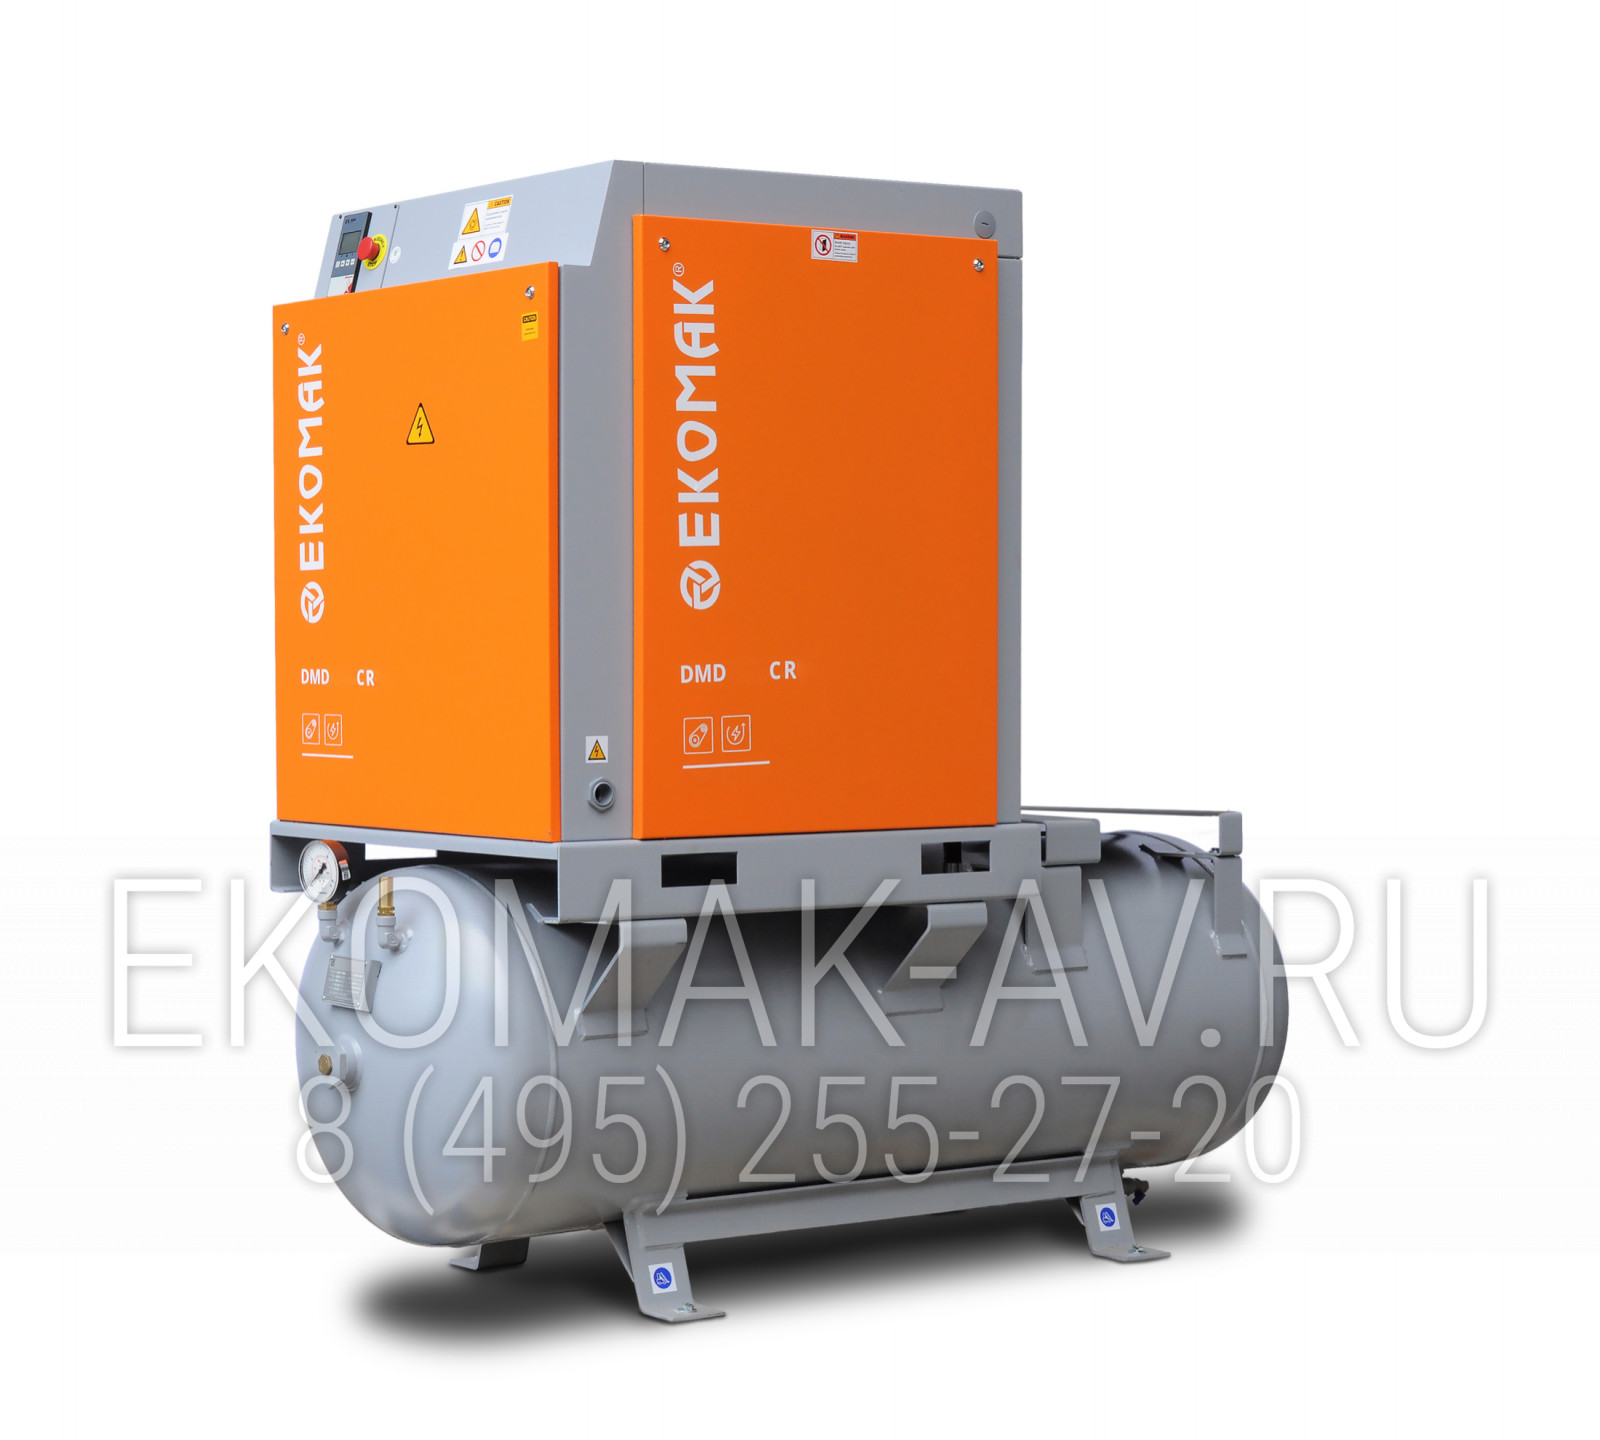 Винтовой компрессор Ekomak DMD 200 CR 8 STD 500L